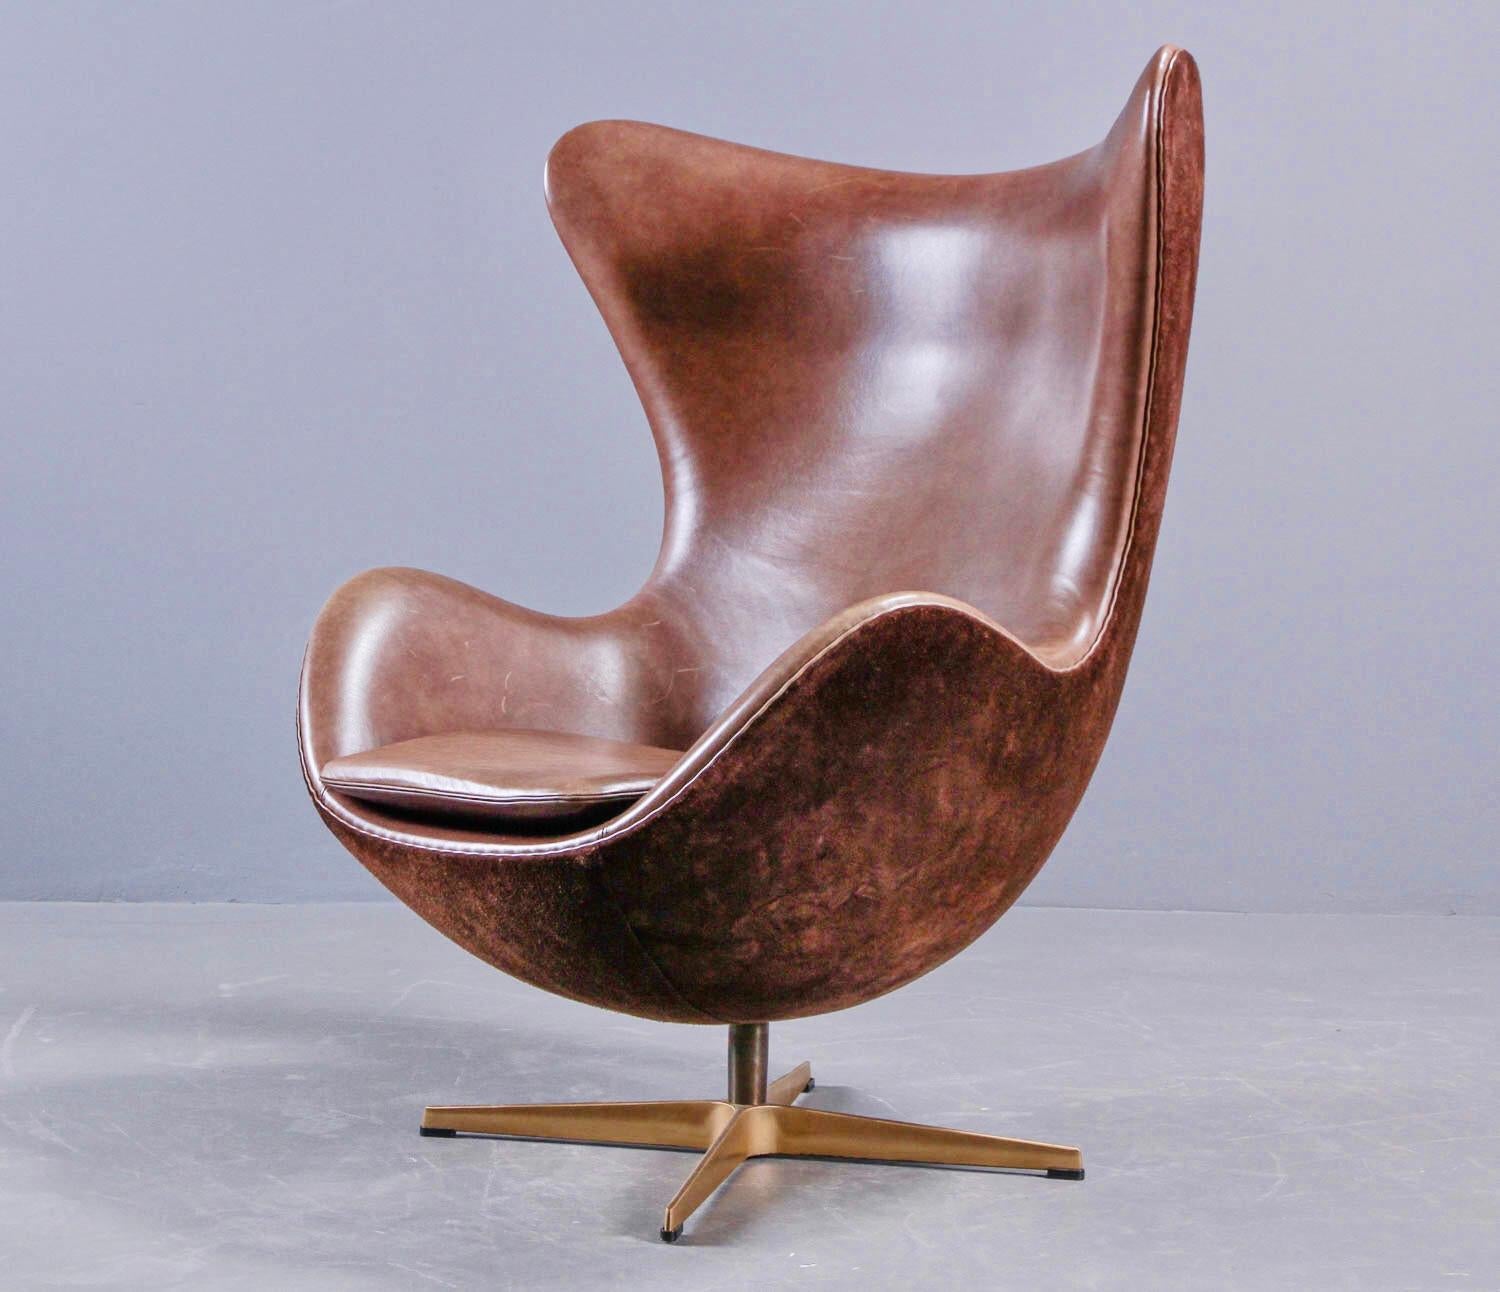 Arne Jacobsen 'Golden Egg Chair' von Fritz Hansen in Dänemark, nummerierte Ausgabe 1